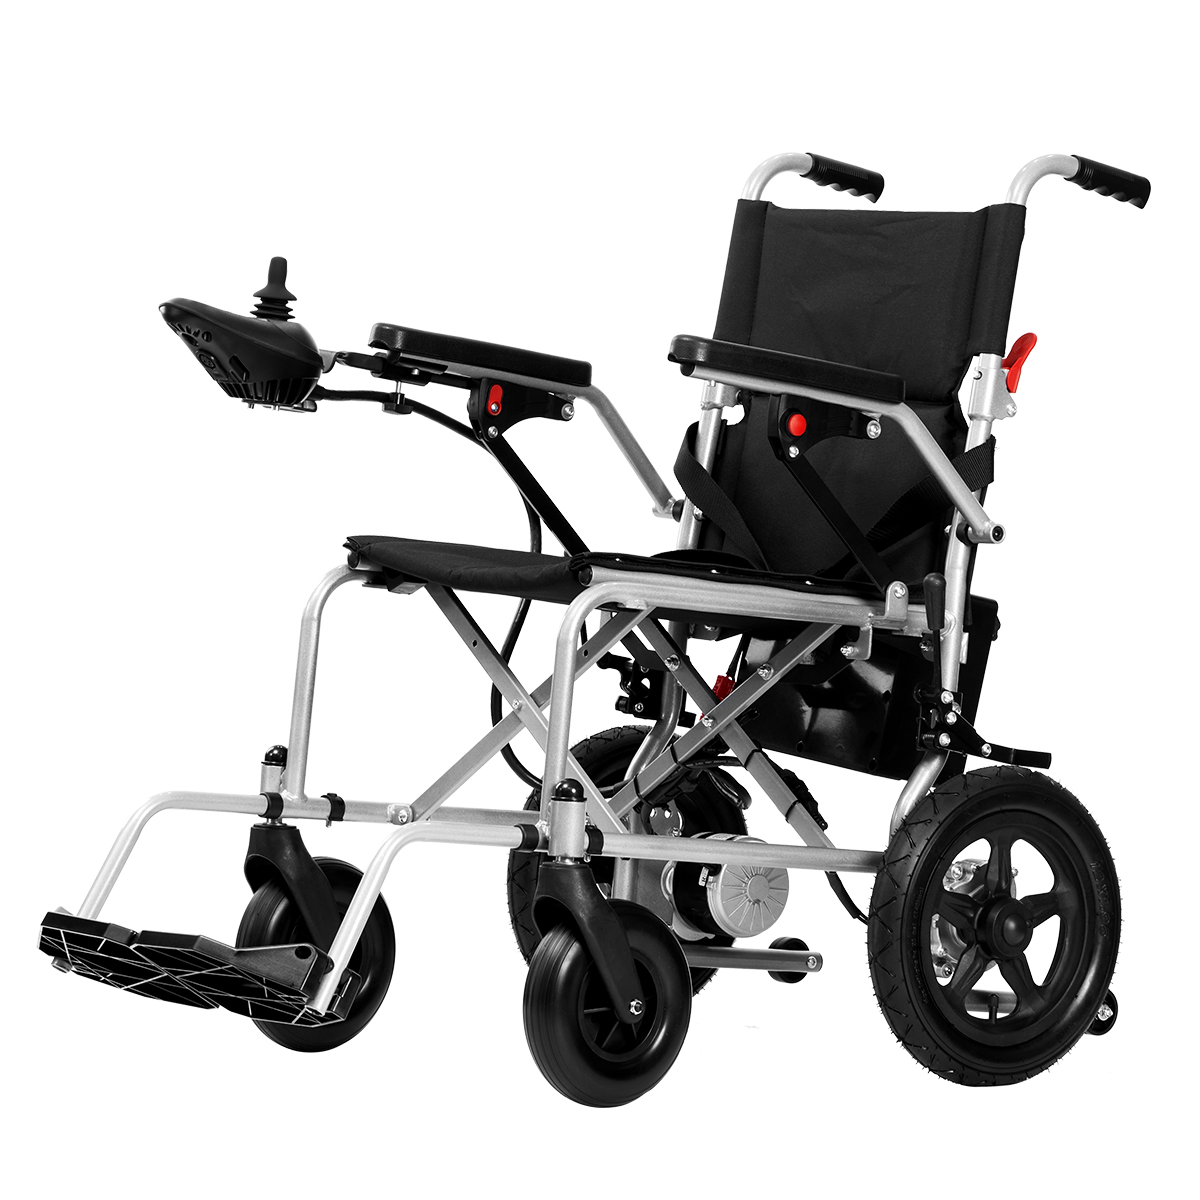 Pigiausias keturių ratų automatinis lengvas sulankstomas plieninis elektrinis vežimėlis